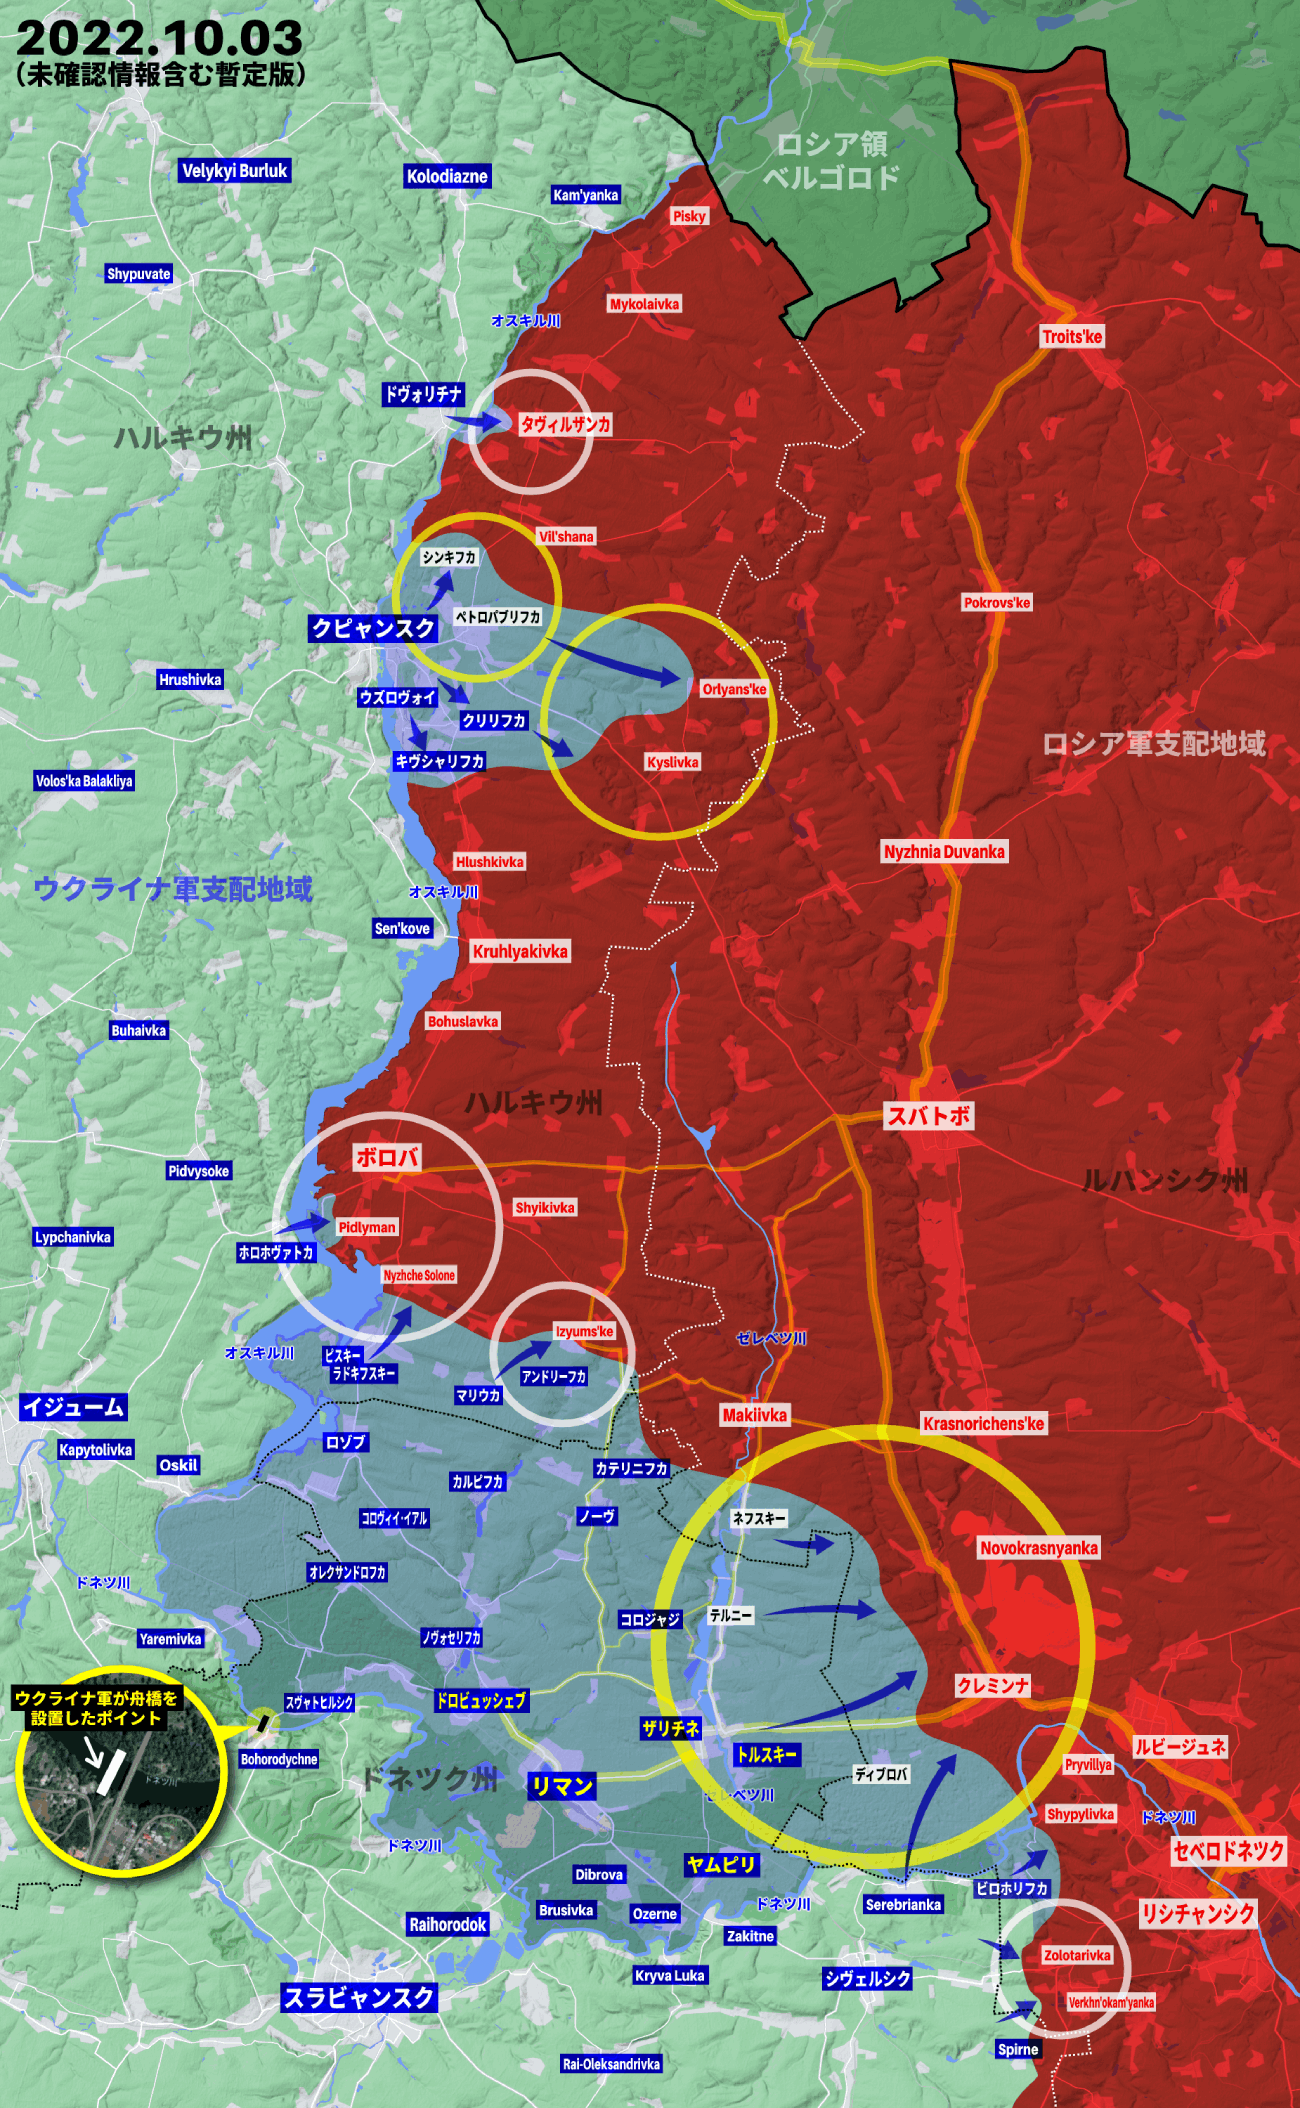 撤退するロシア軍を追いかけるウクライナ軍、クレミンナ郊外に到達か